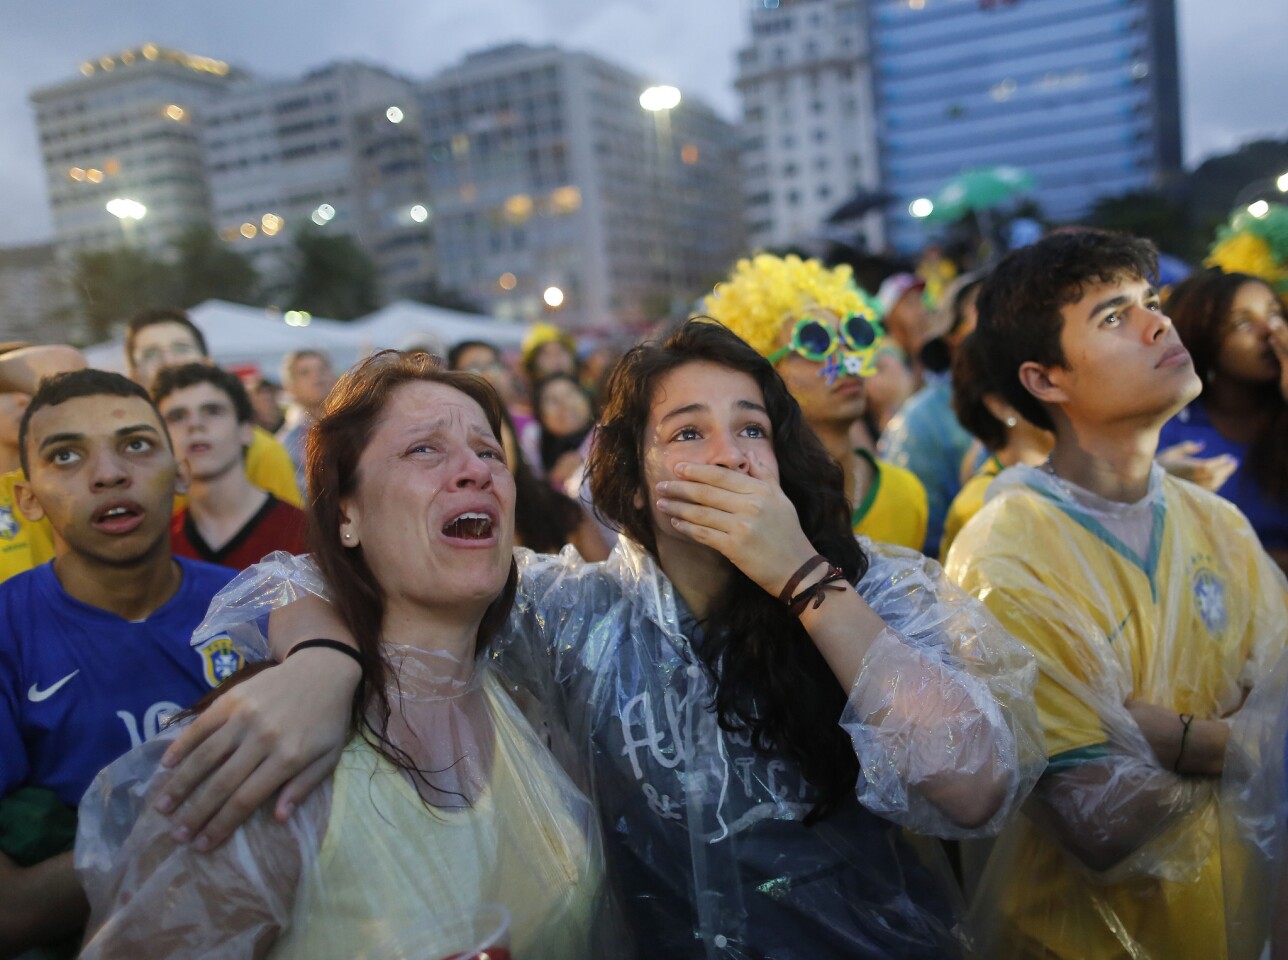 Brazilian soccer fans can't hide their shock at the FIFA Fan Fest area in Rio de Janeiro.